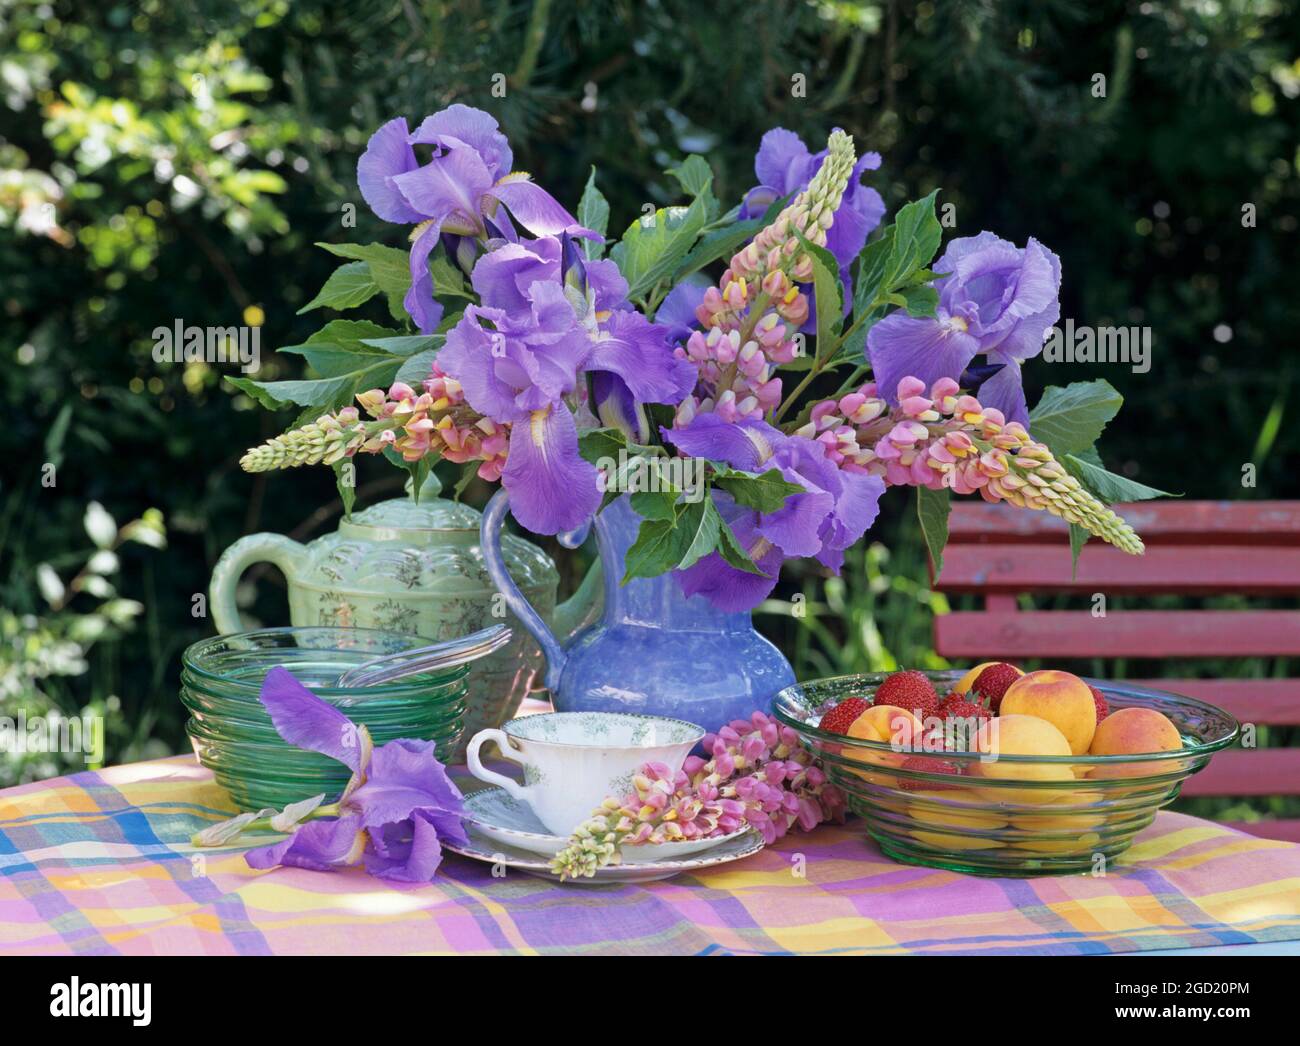 botanik, lupinus und Iris in einem Krug auf einem Tisch im Garten, ZUSÄTZLICHE-RIGHTS-CLEARANCE-INFO-NOT-AVAILABLE Stockfoto